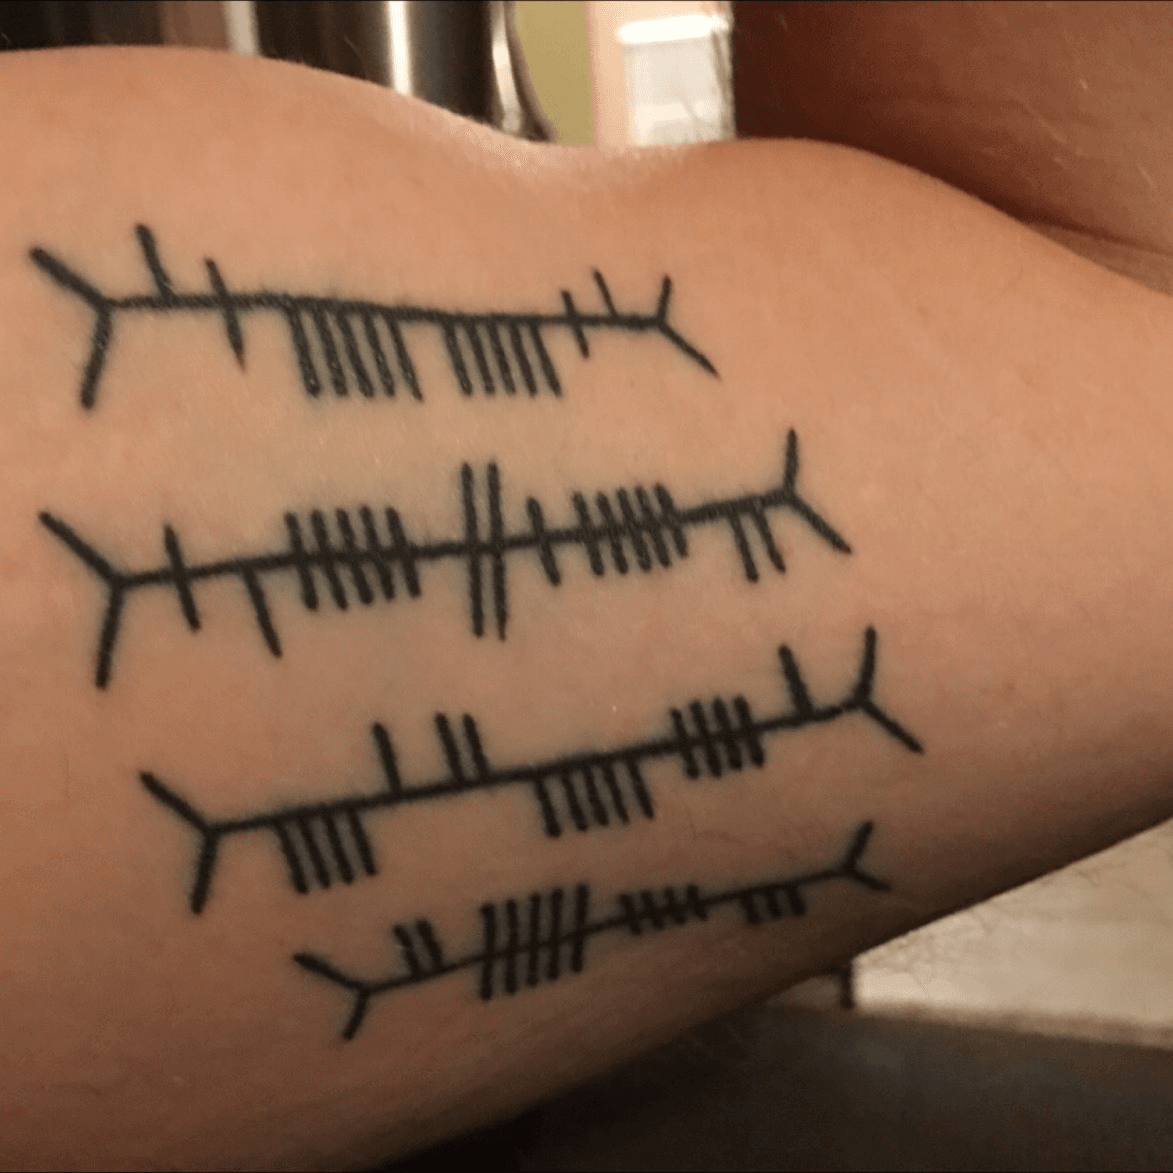 Mo Anam Cara matching tattoos by brainleakage on DeviantArt